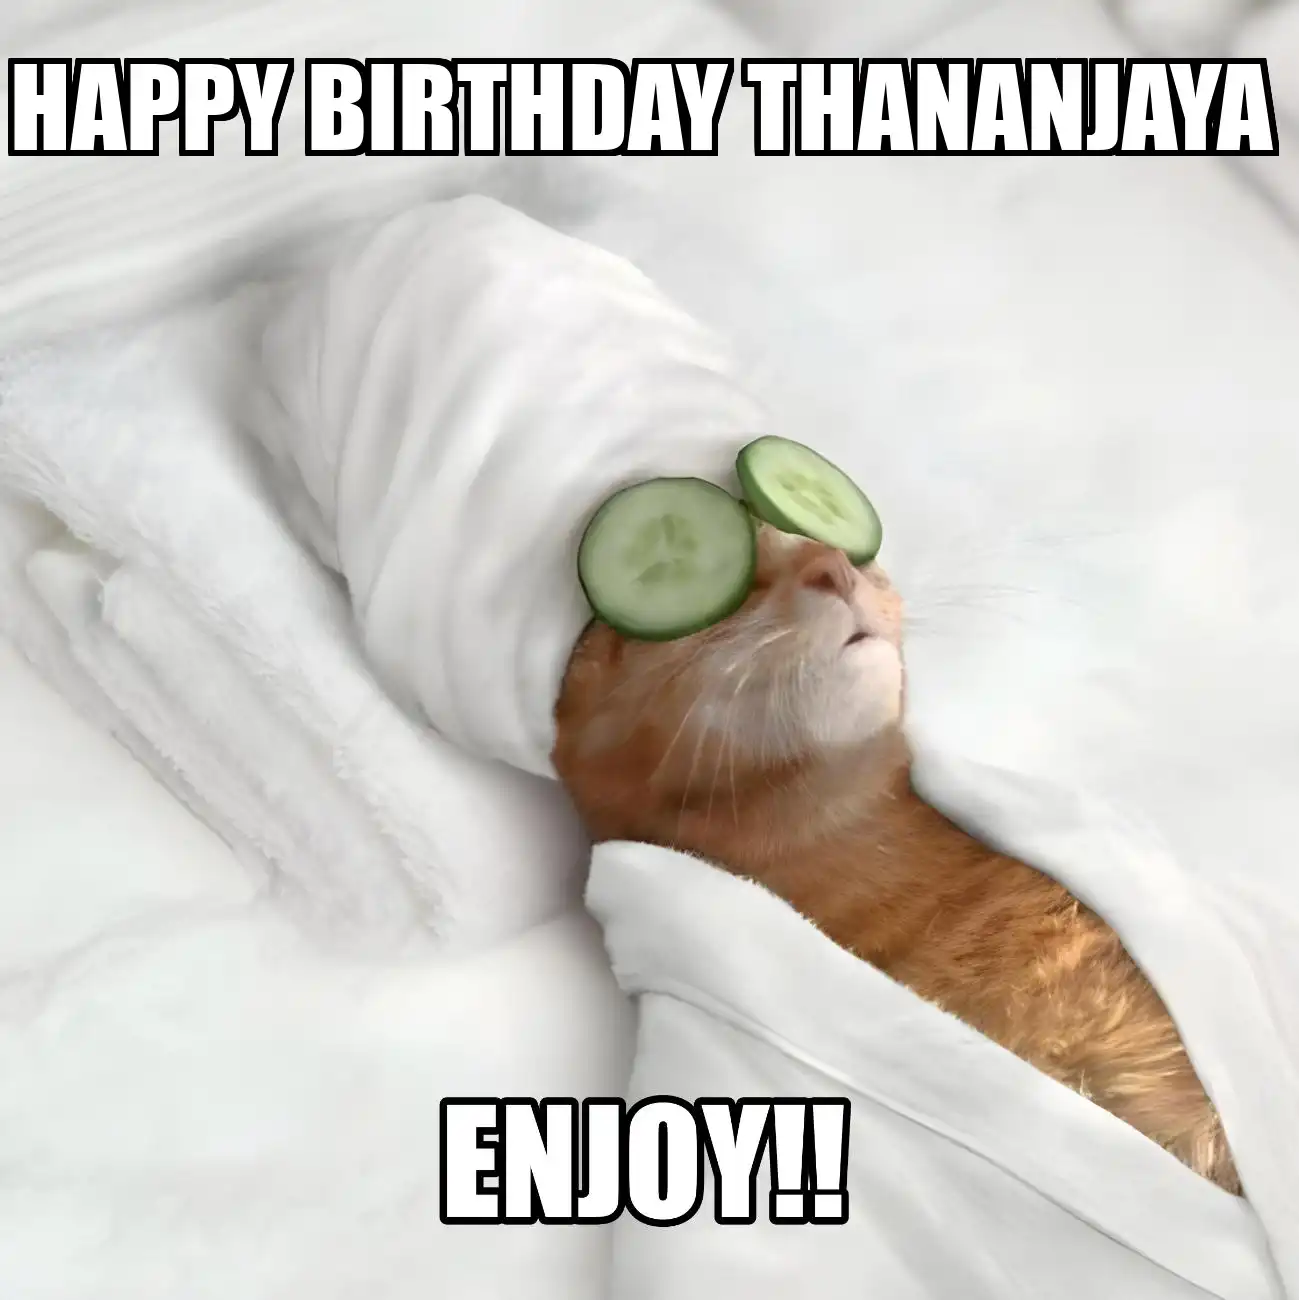 Happy Birthday Thananjaya Enjoy Cat Meme